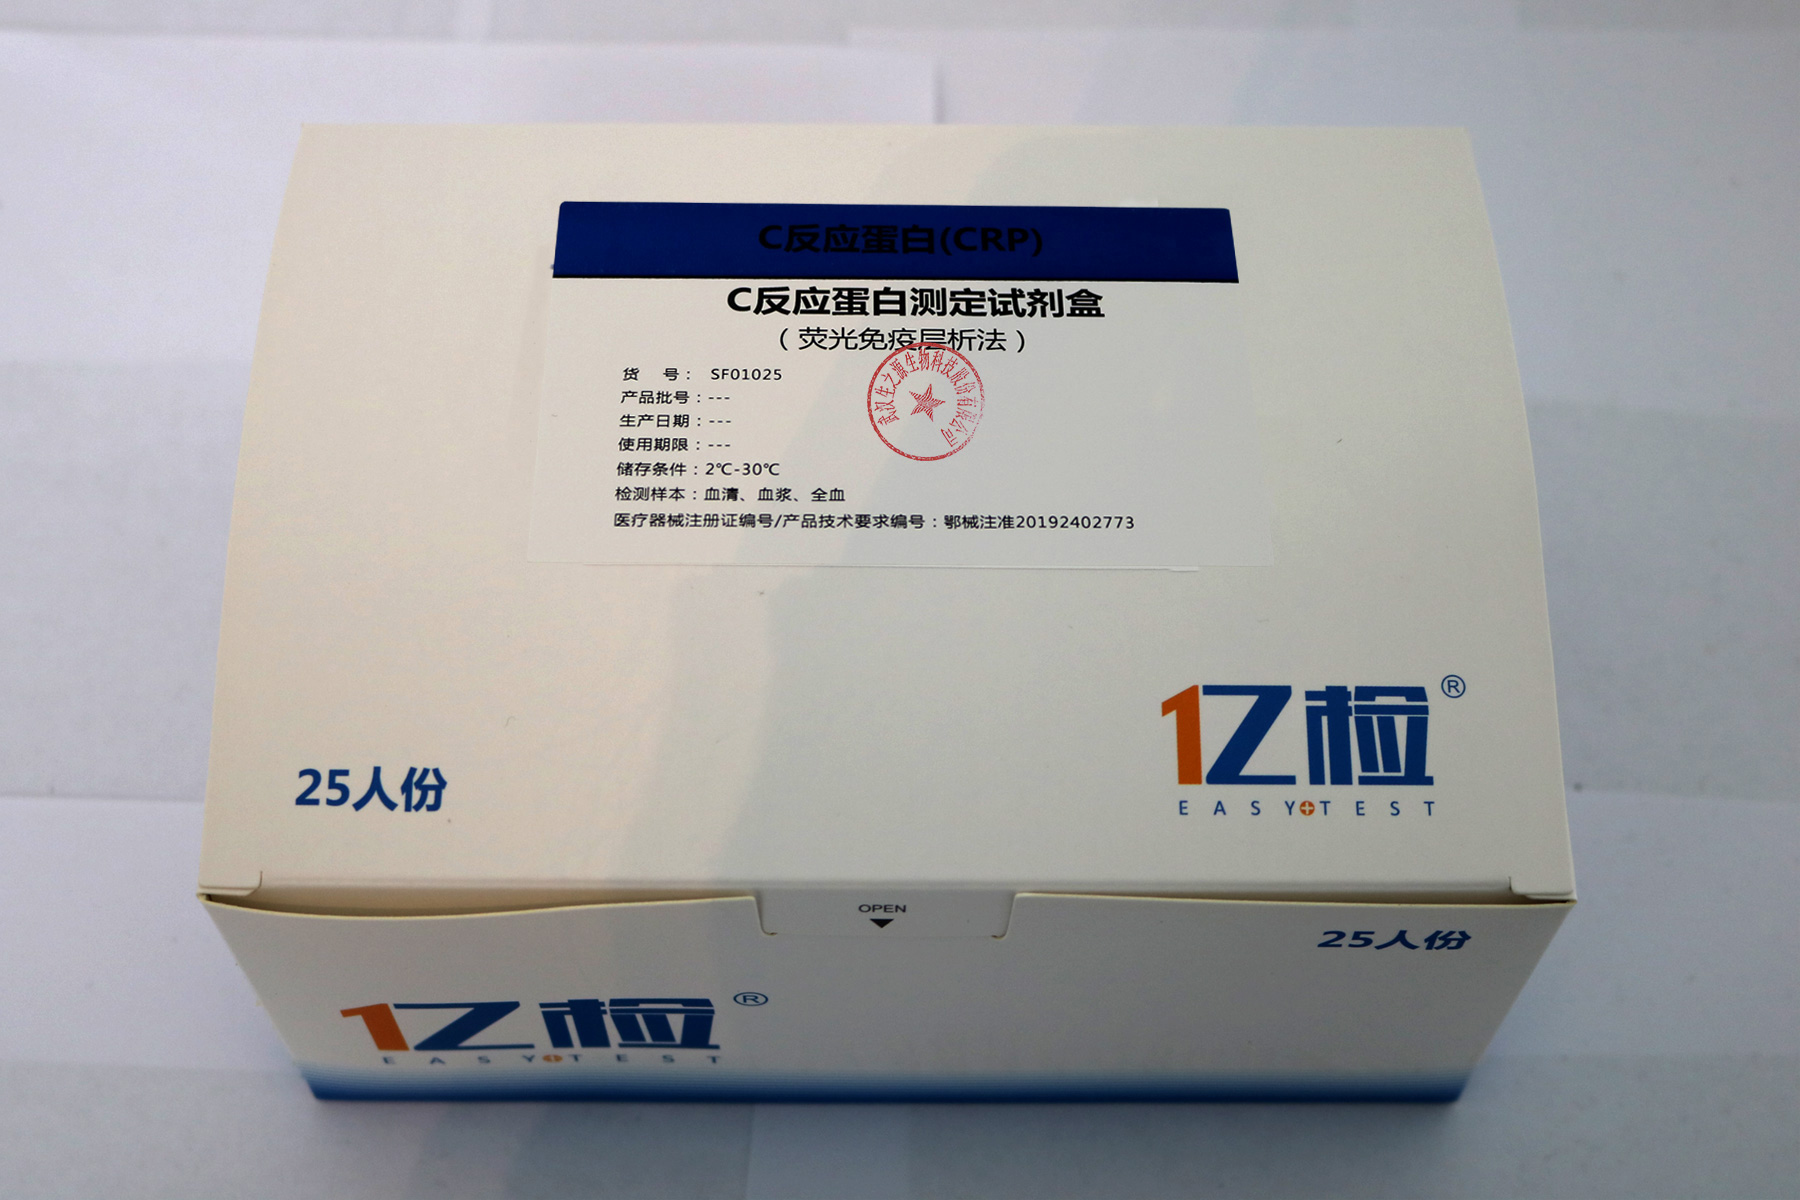 【生之源】C反应蛋白测定试剂盒(荧光免疫层析法)